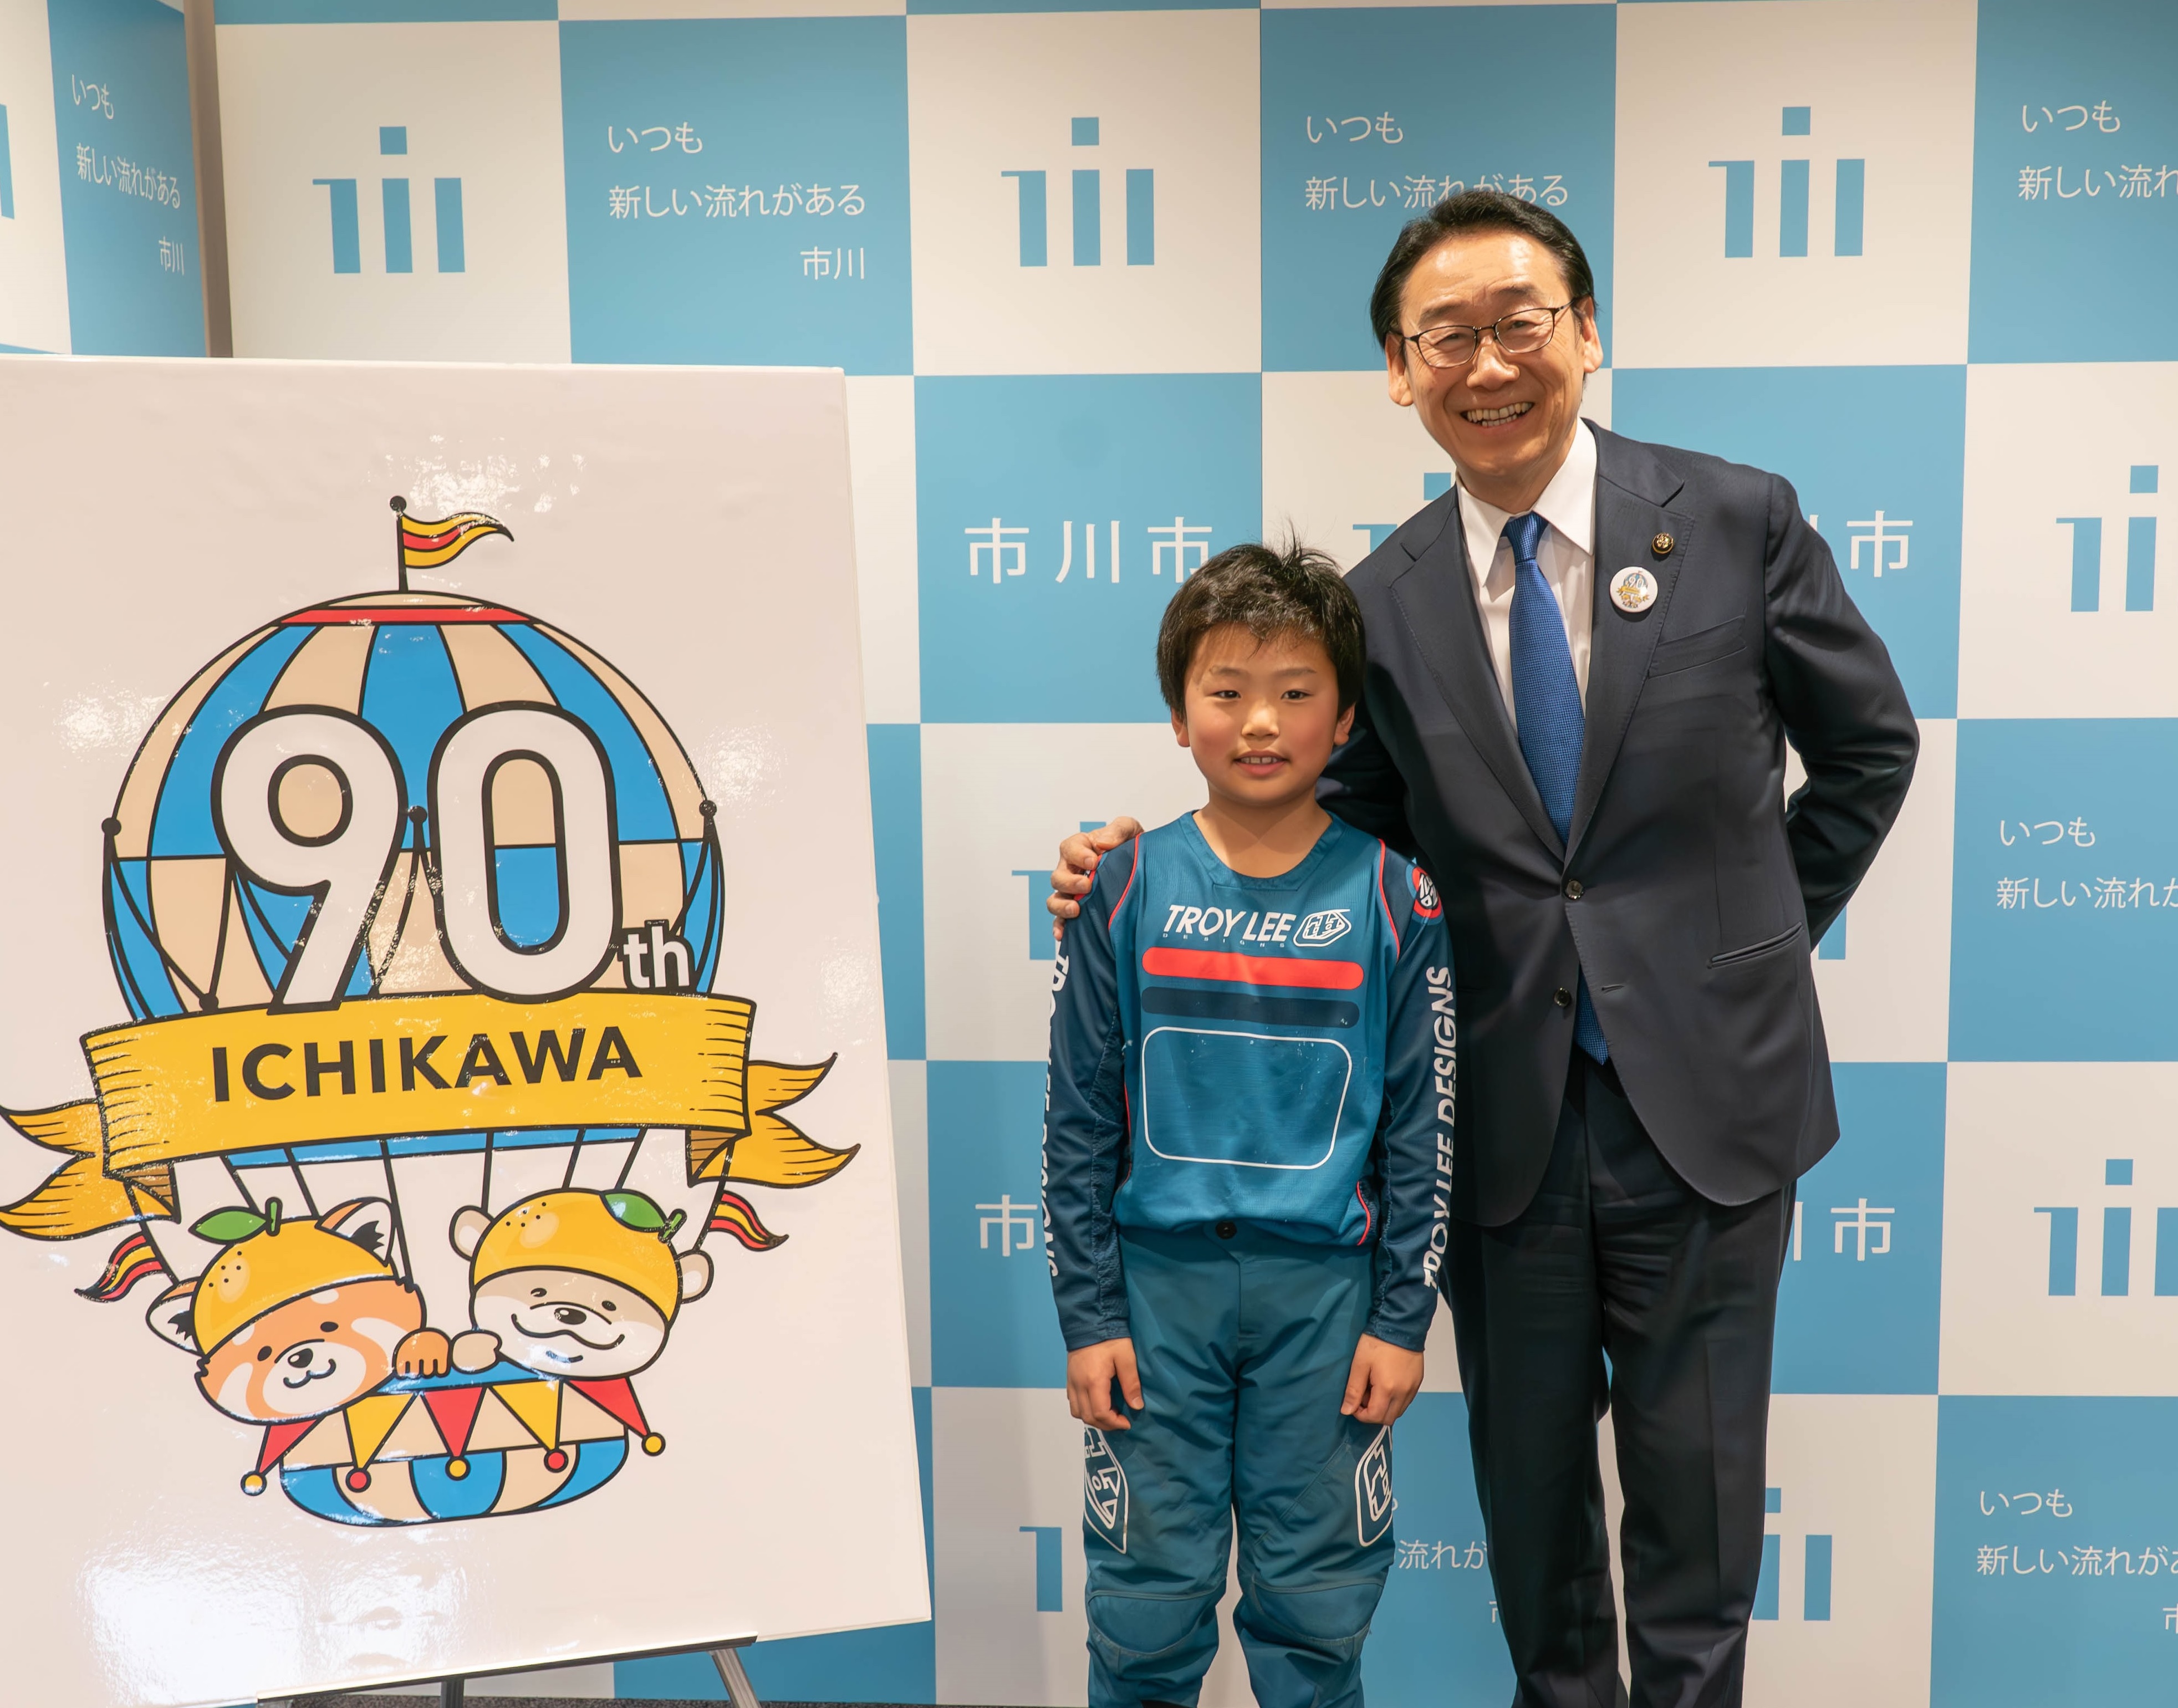 田中市長と久保田瑛人さんの写真